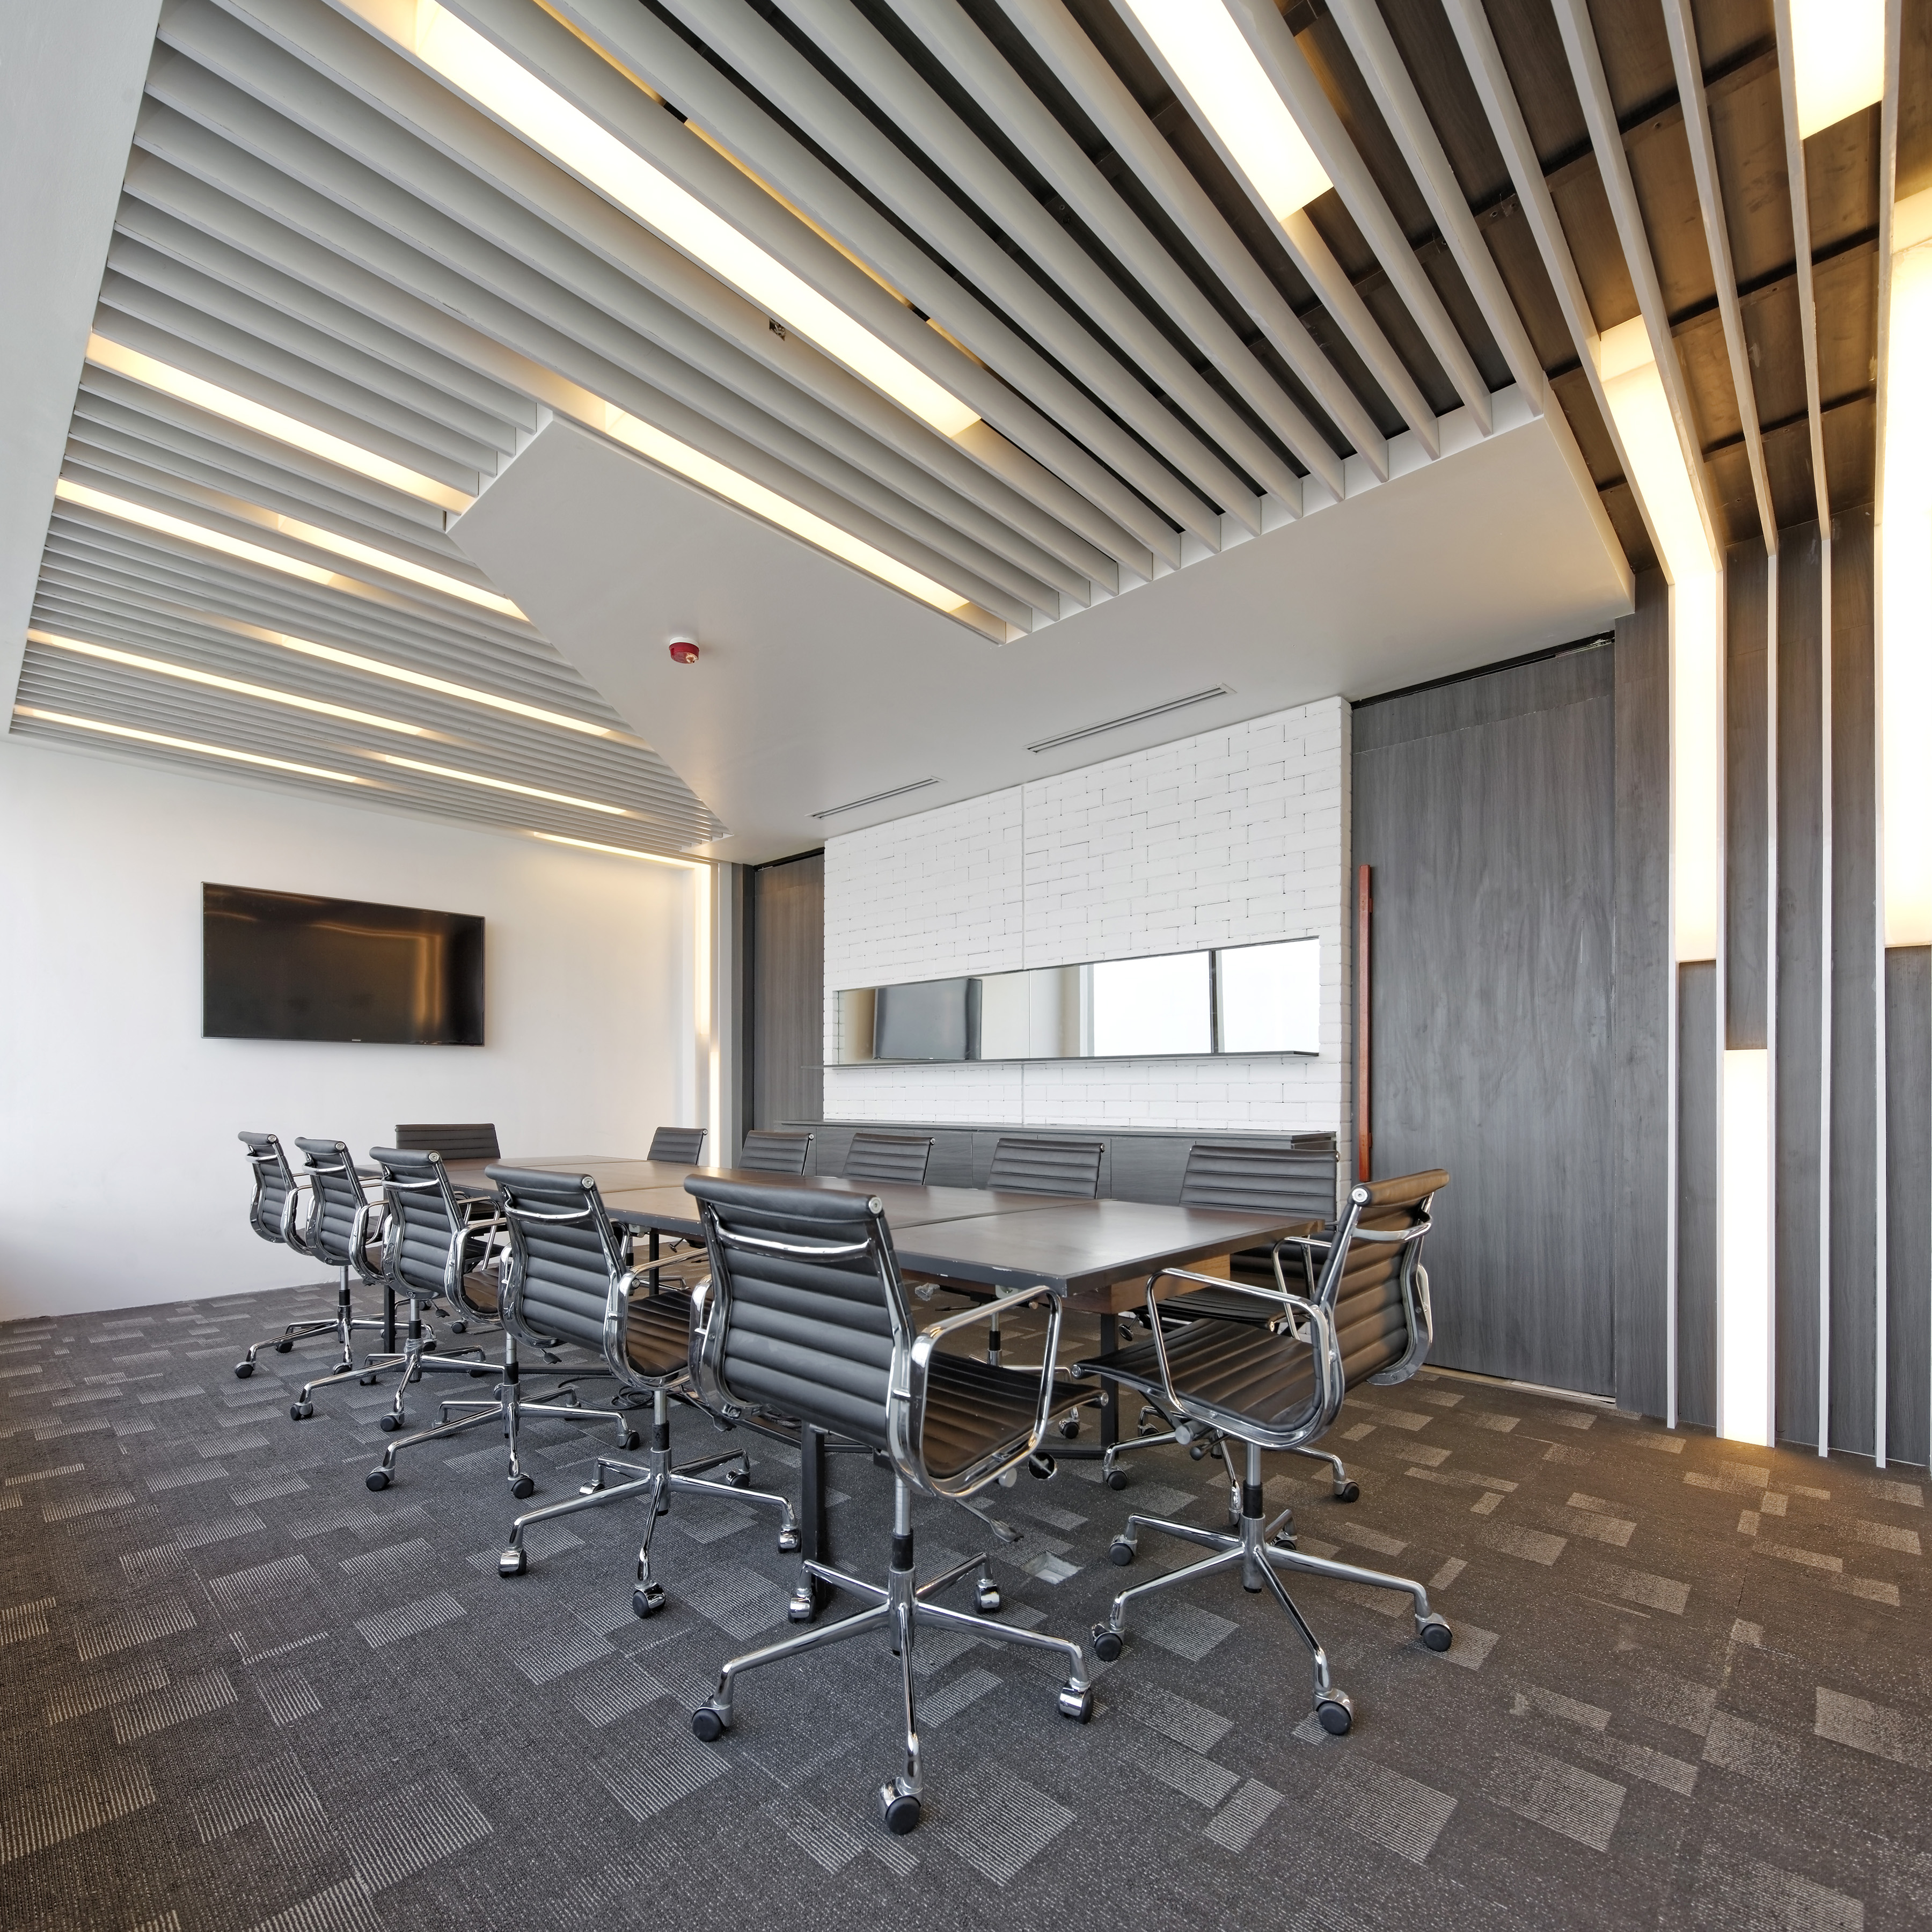 Отделка помещений потолок. Кубообразный реечный потолок. Office Interior Design reyechniy patalok. Интерьер офиса. Потолок в офисе.